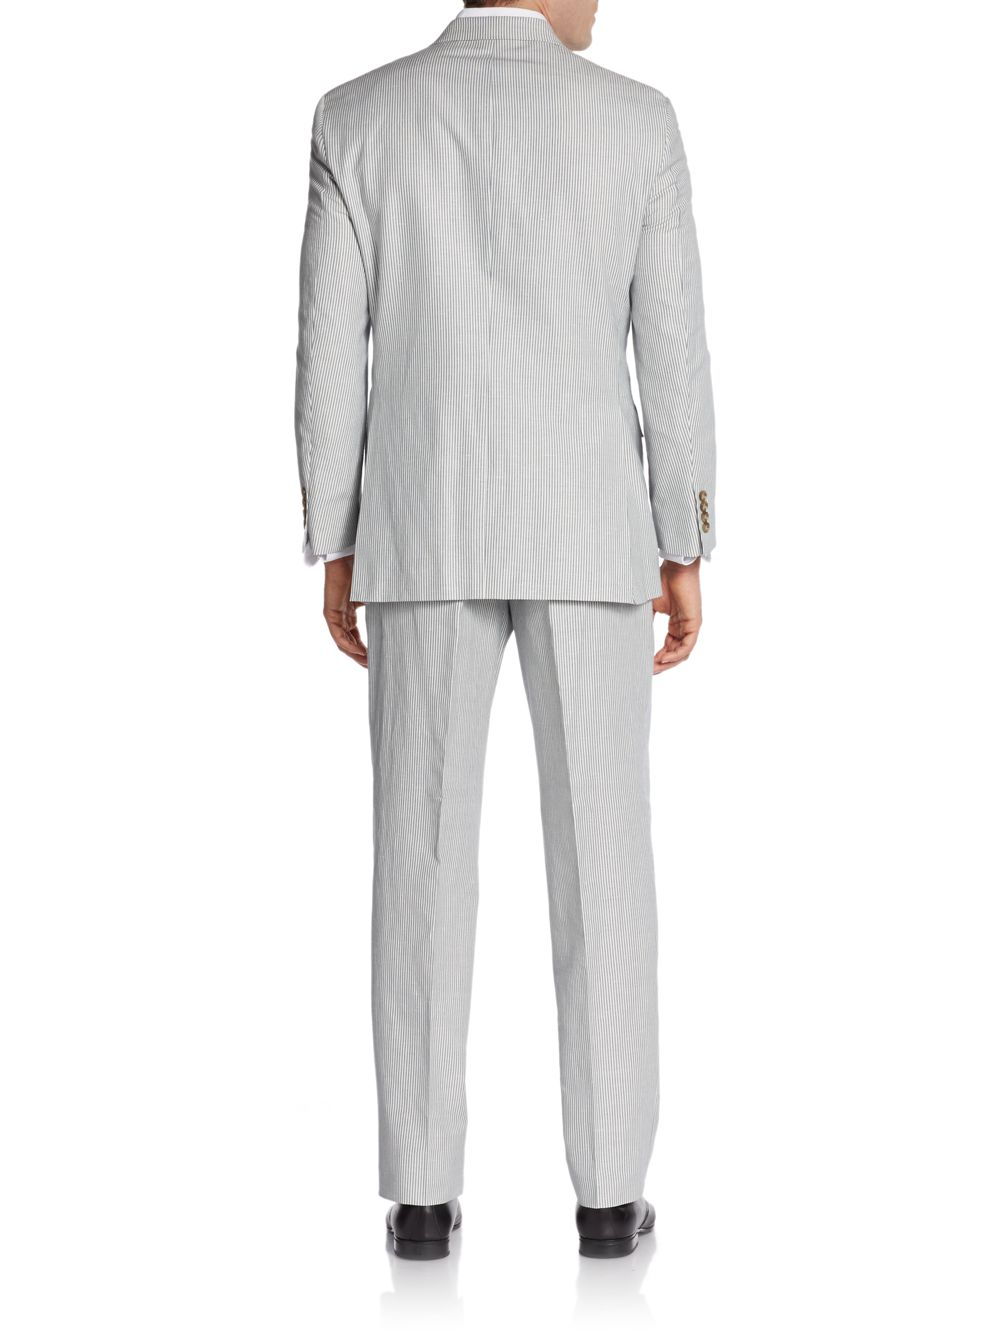 Lyst - Hickey Freeman Seersucker Twobutton Suit in Gray for Men